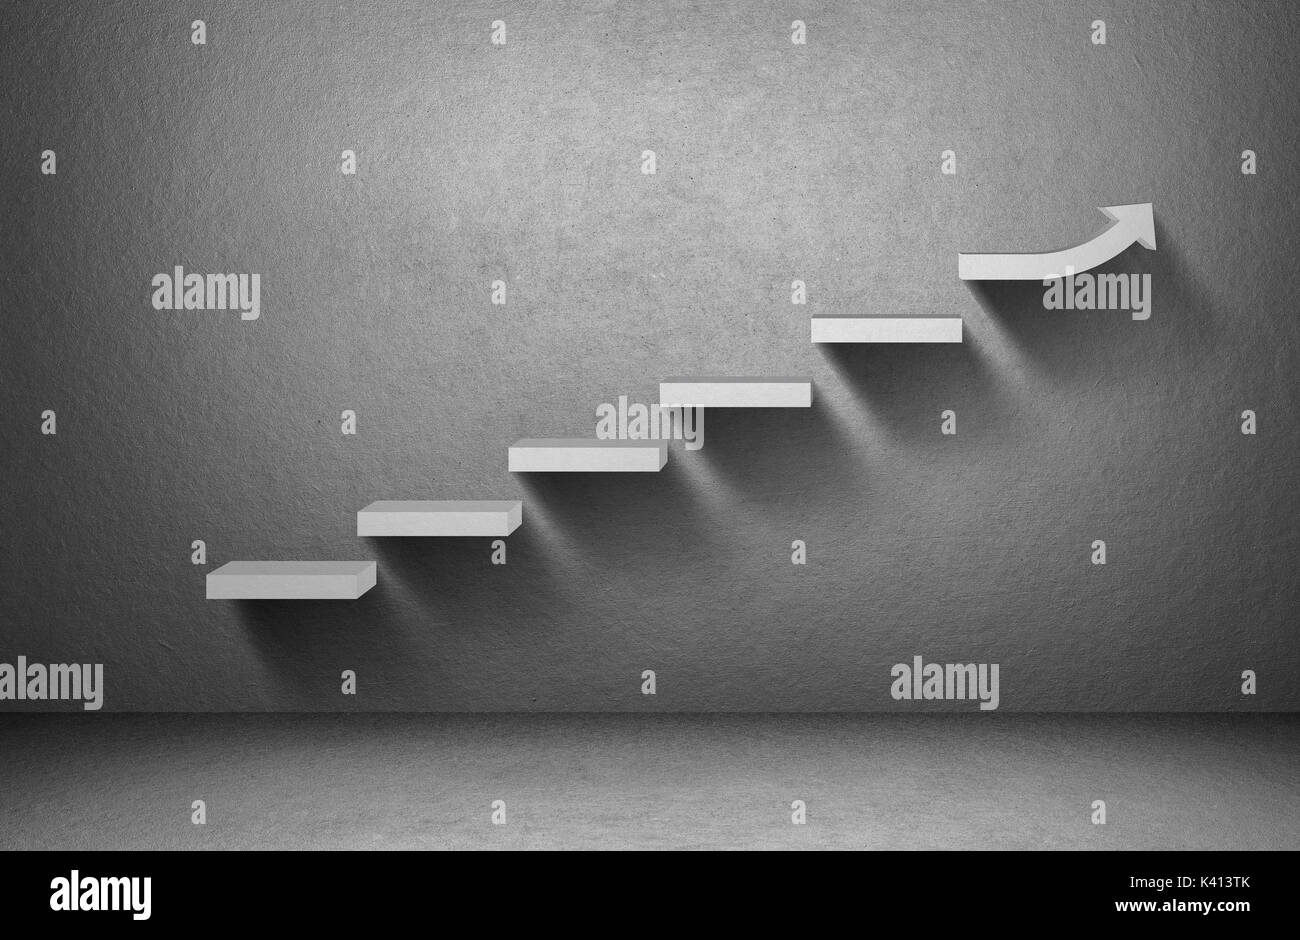 La hausse graphique flèche sur escalier sur fond gris, concept d'entreprise Banque D'Images